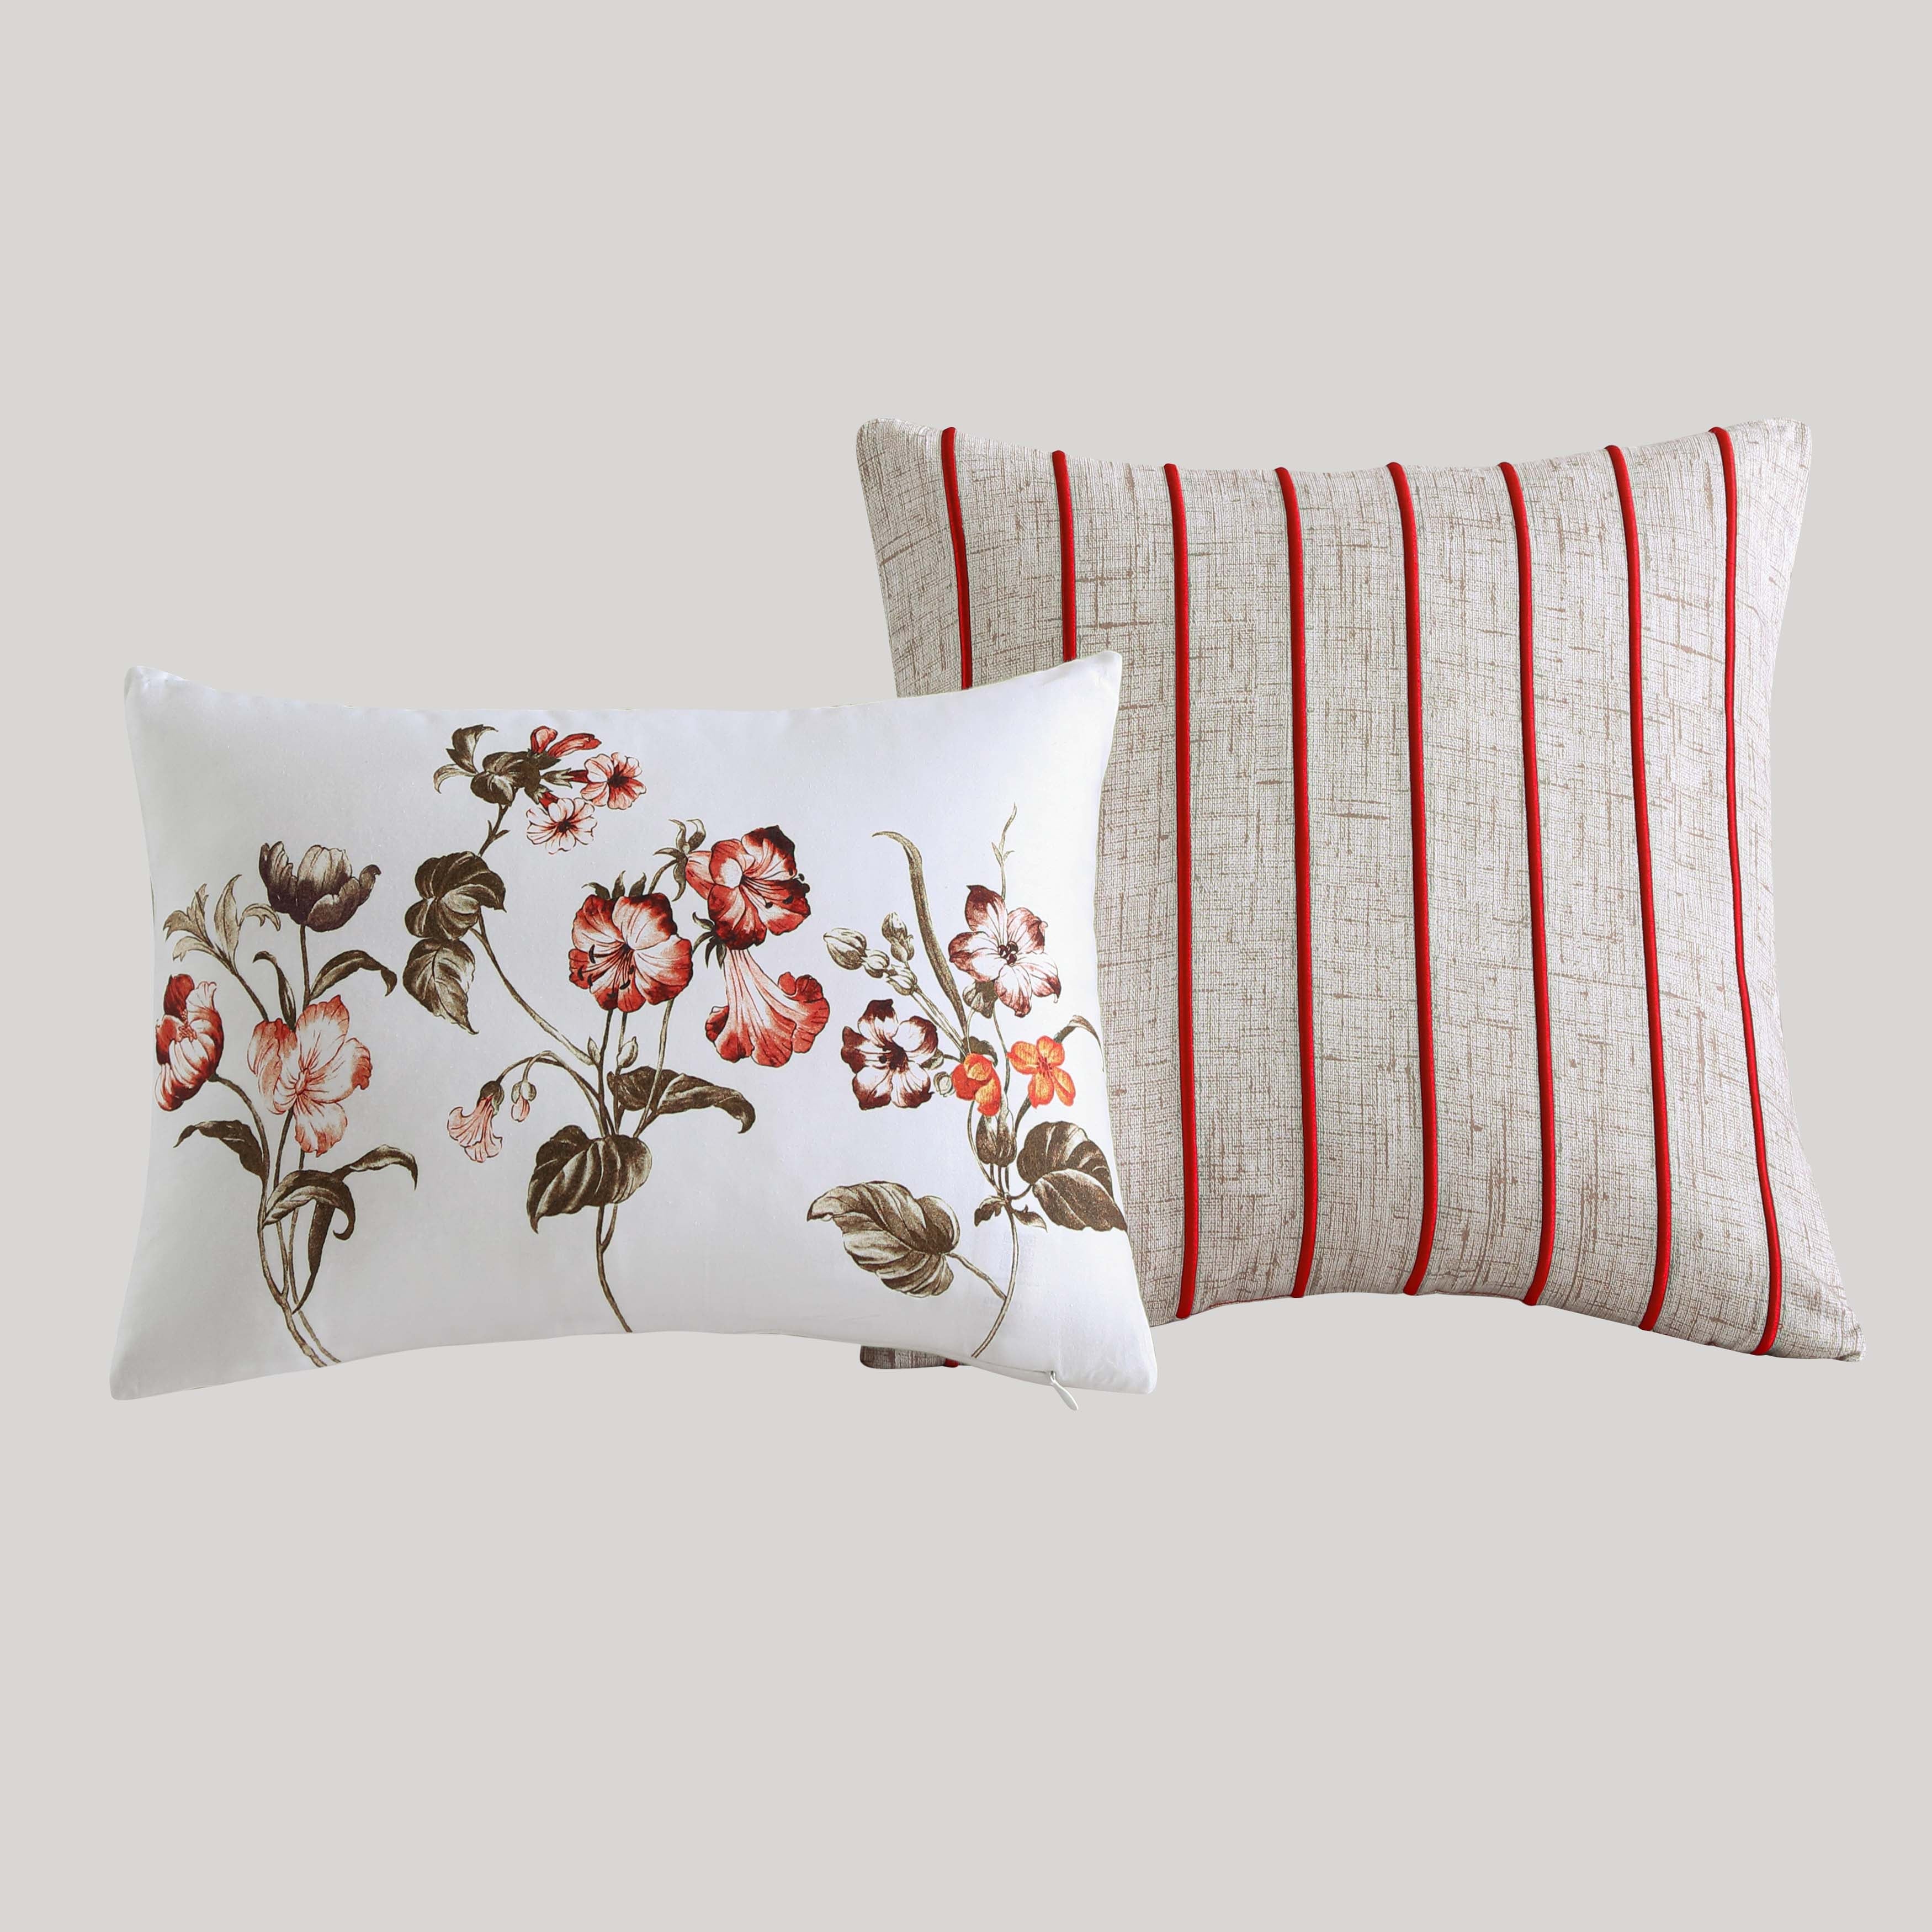 Bebejan Red Floral Vine 100% Cotton 230 Thread Count 5-Piece Reversible Comforter Set Comforter Sets By Bebejan®